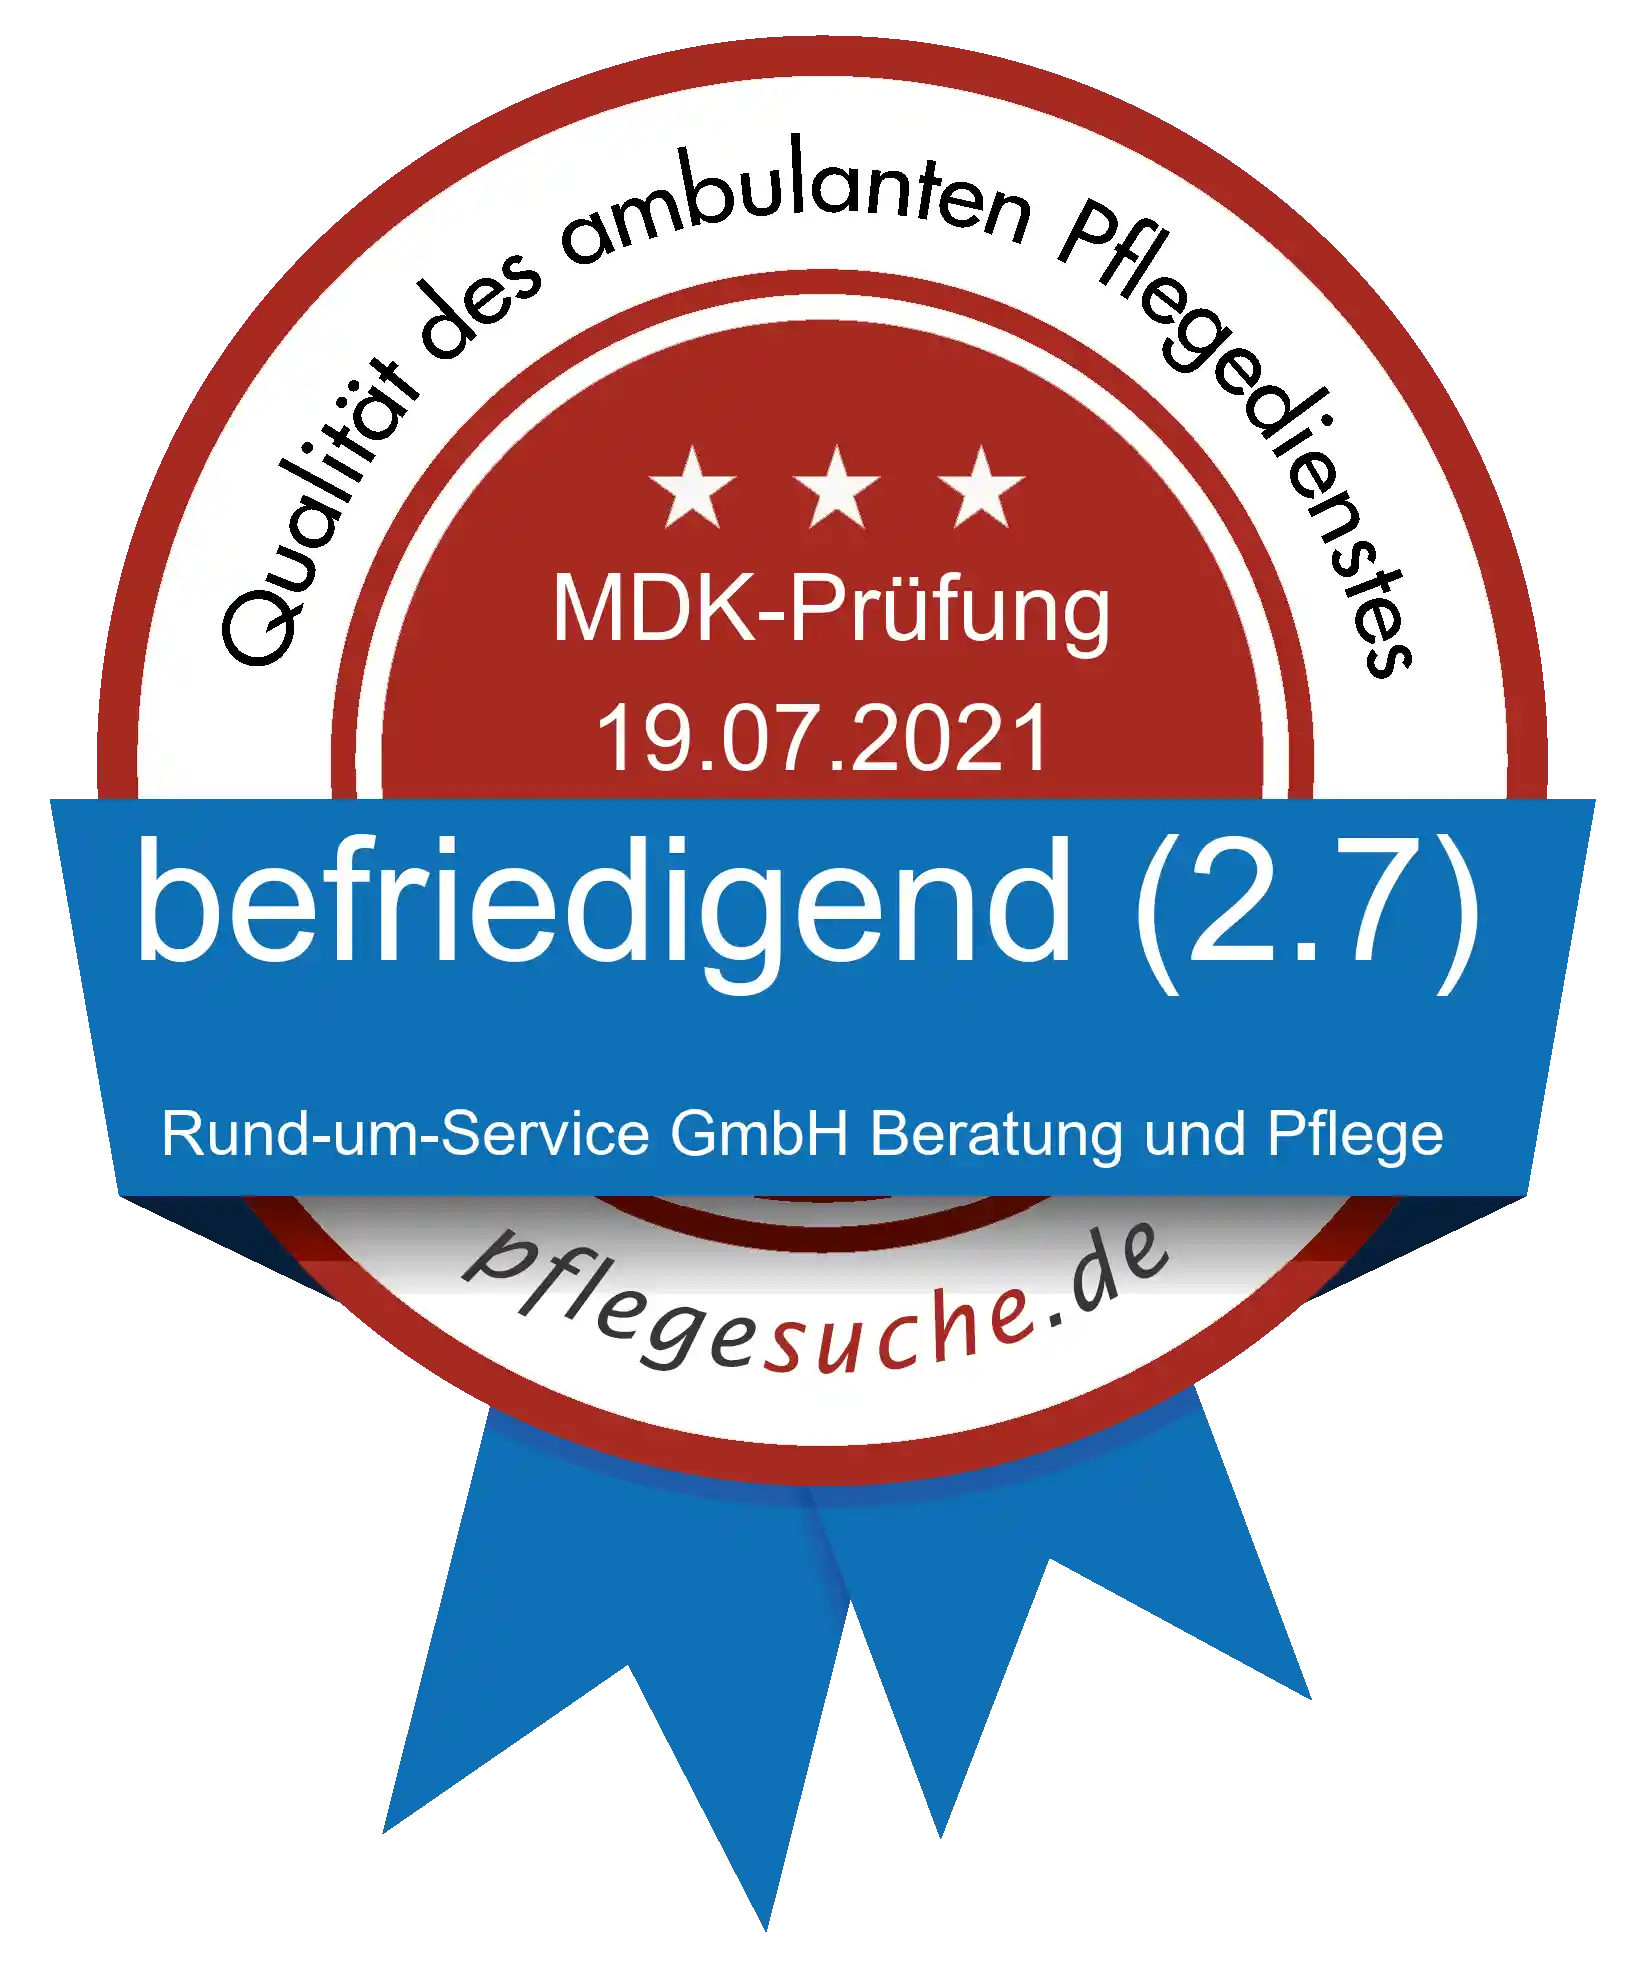 Siegel Benotung: Rund-um-Service GmbH Beratung und Pflege